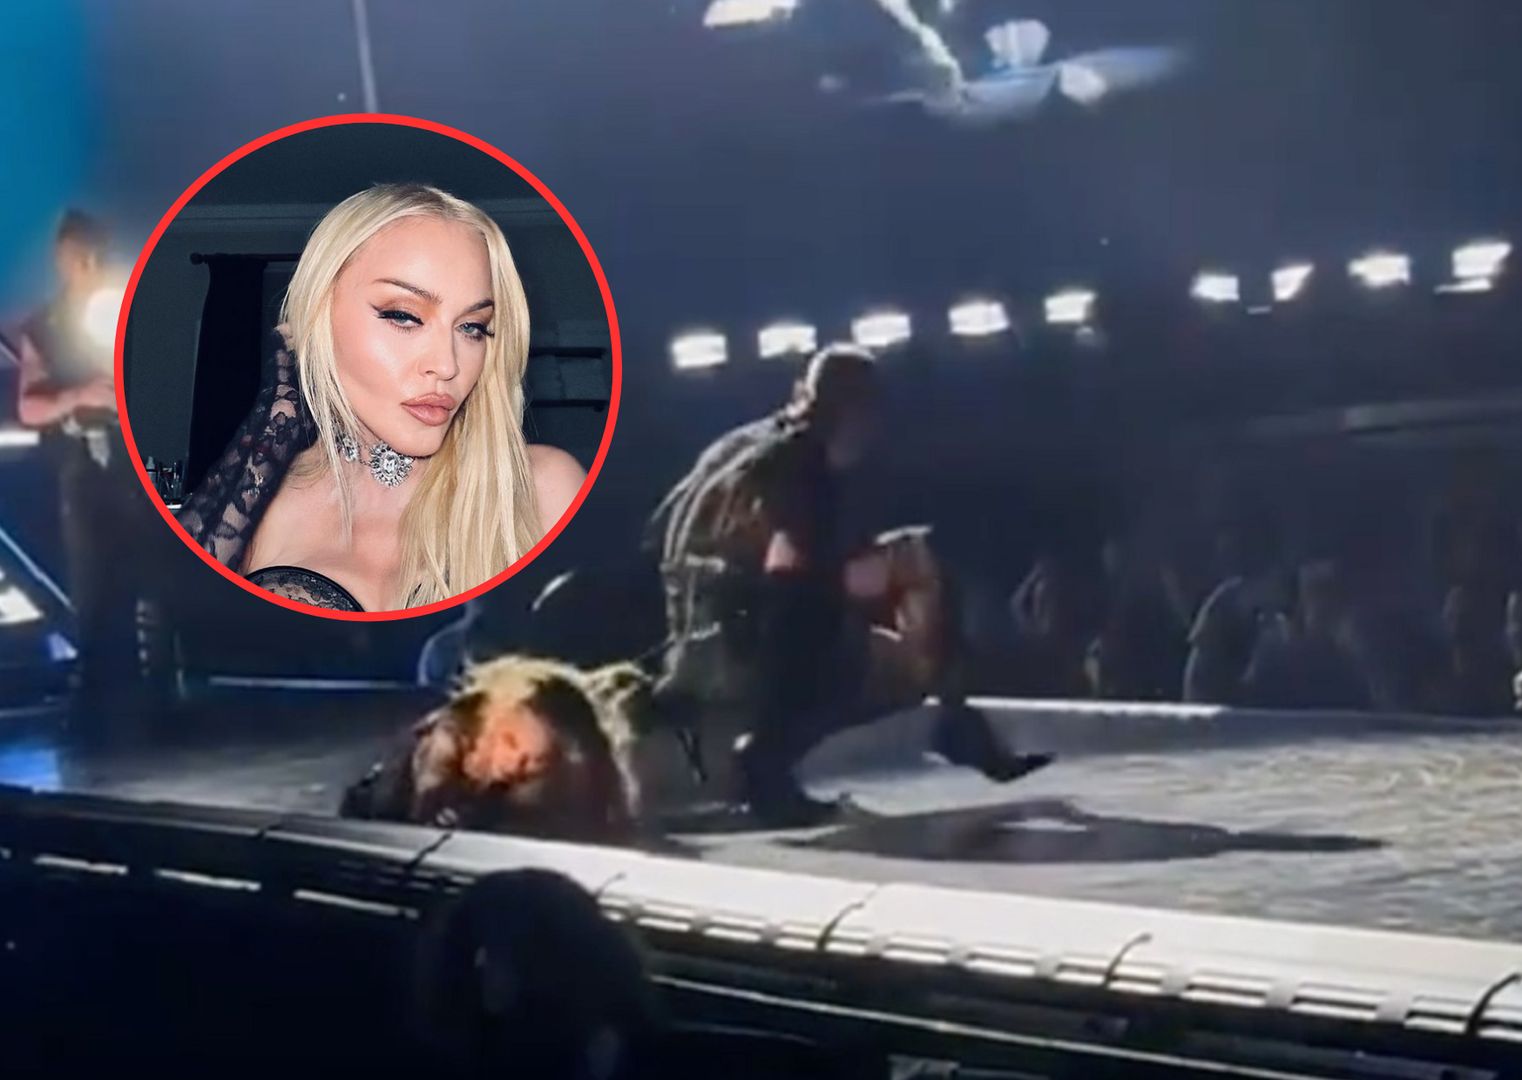 Upadek Madonny. Wywróciła się na scenie, internauci znaleźli winnego